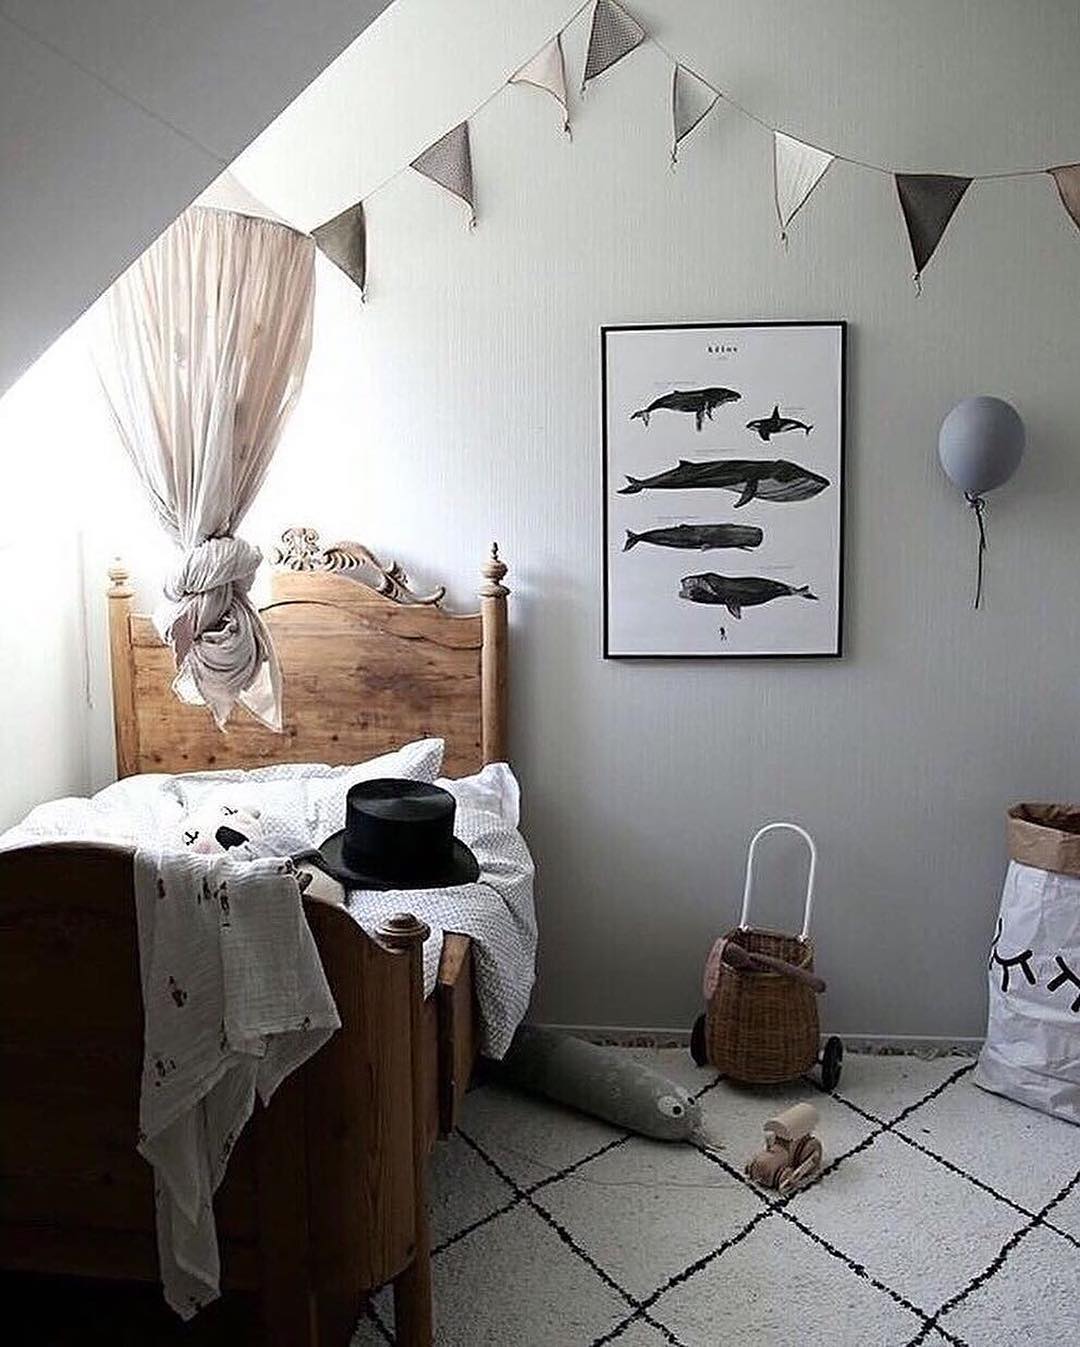 Kids Twin Bed in Corner of Bedroom. Photo by Instagram user @littlebigdeco